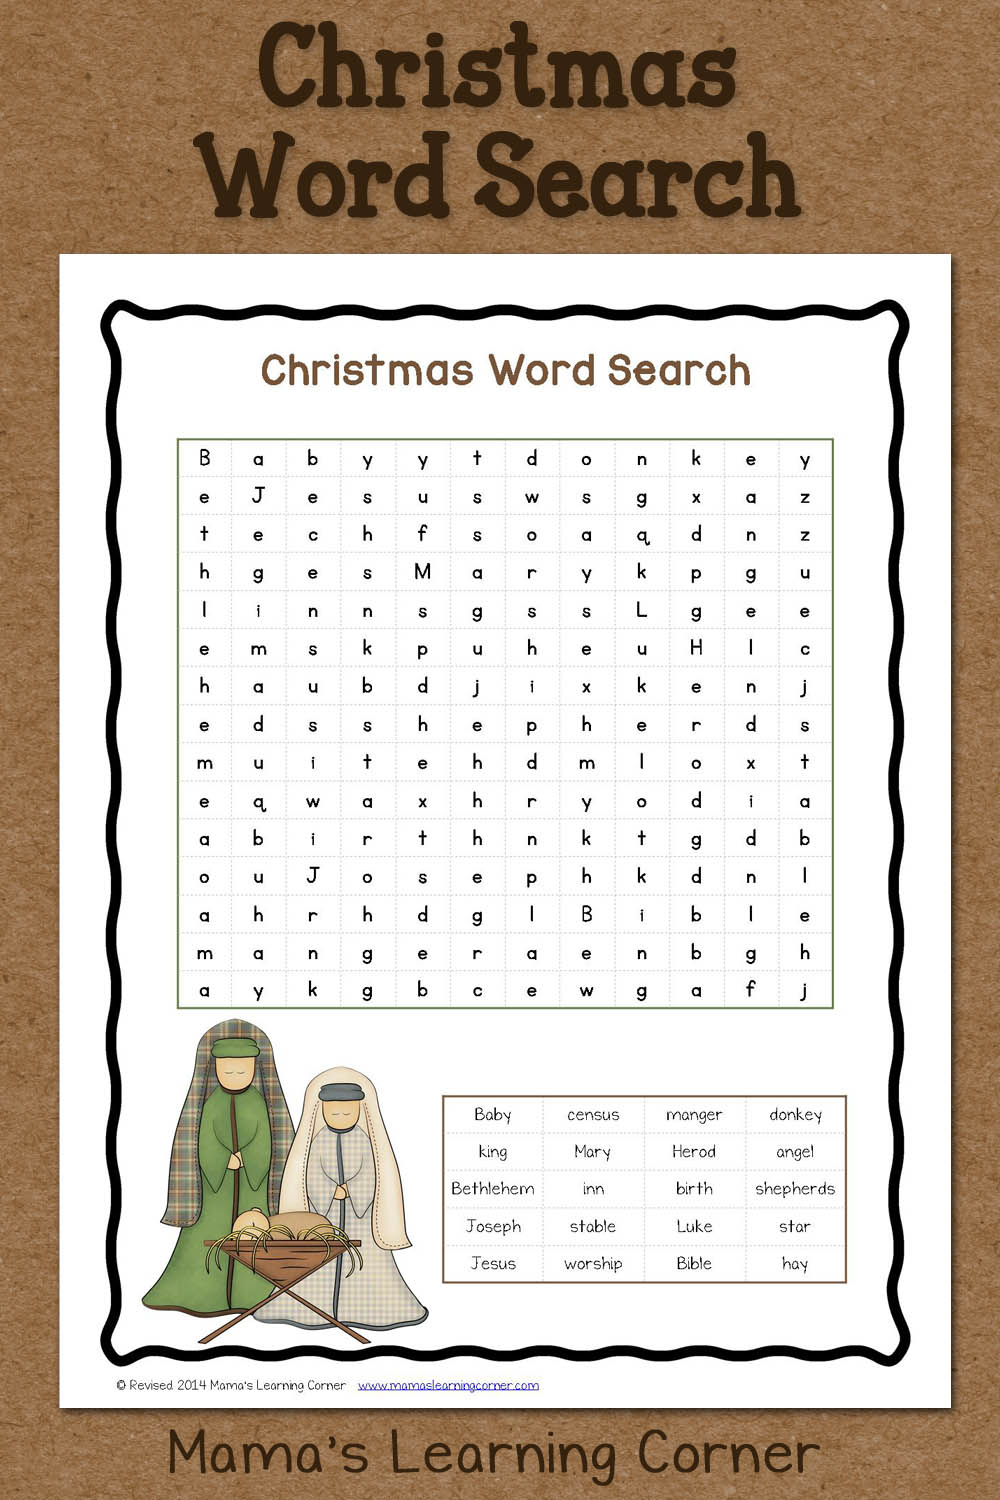 Christmas Word Search: Free Printable - Mamas Learning Corner | Christian Christmas Worksheets Printable Free